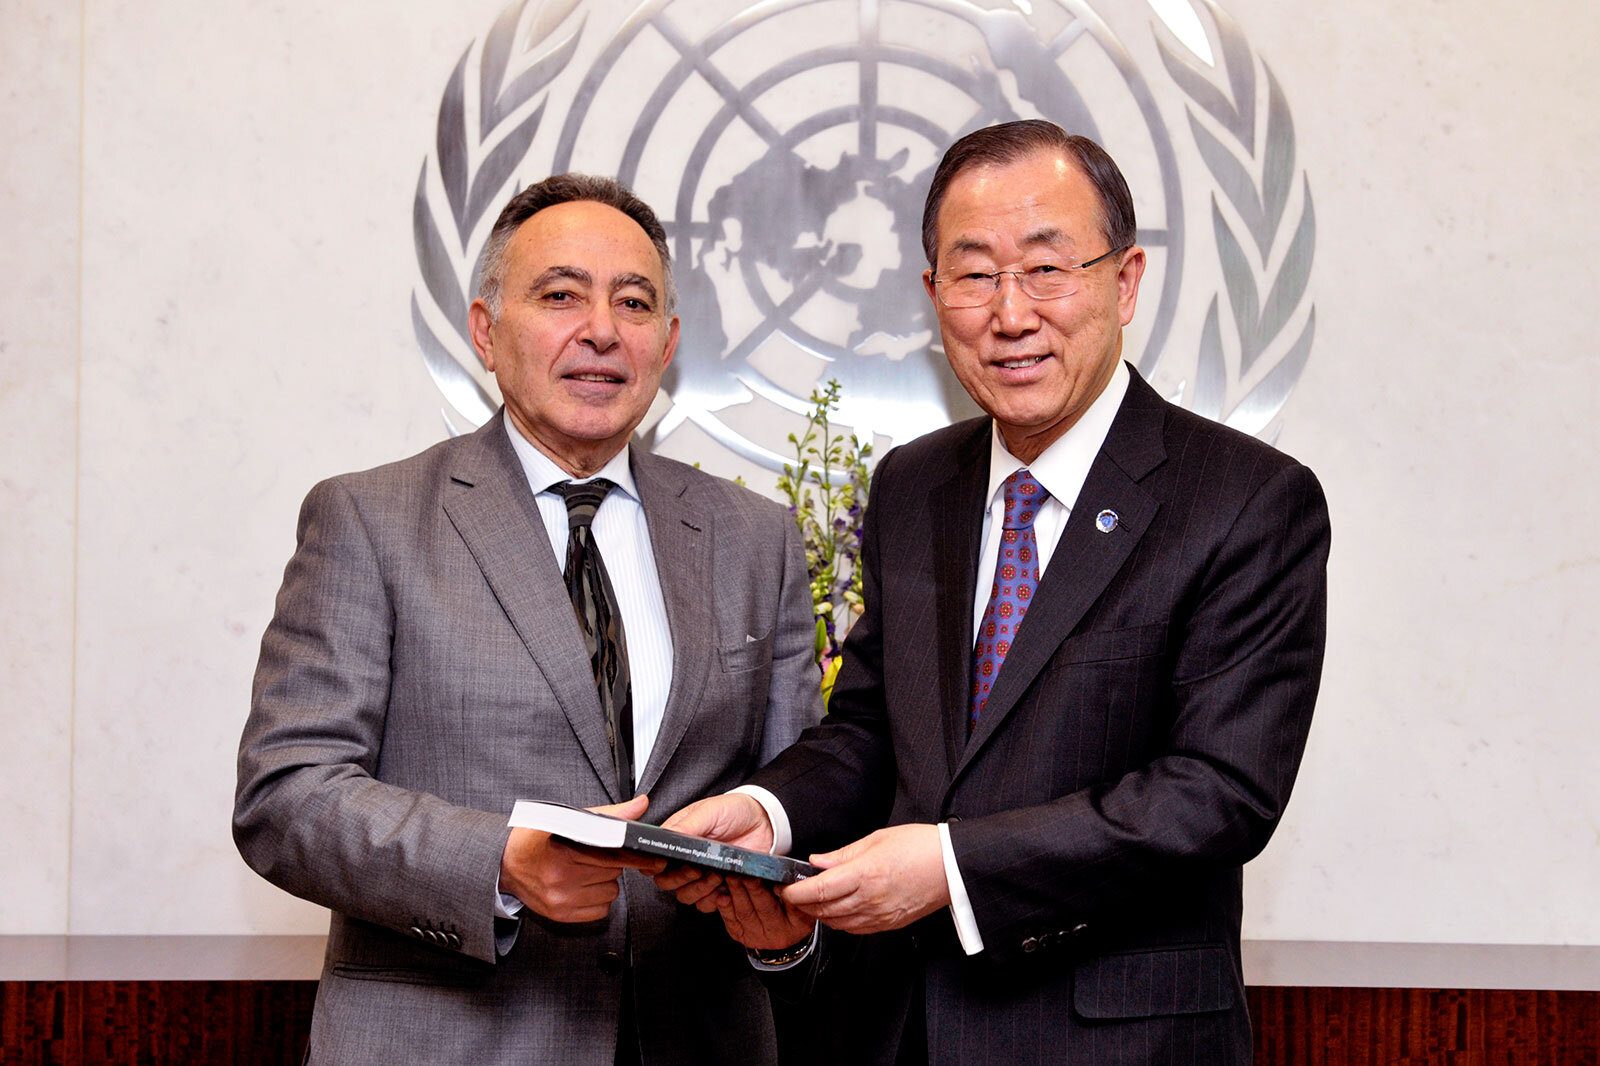 الناشط المصري في مجال حقوق الإنسان بهي الدين حسن، في الصورة هنا مع الأمين العام السابق للأمم المتحدة، بان كي مون (الصورة: مارك غارتن)